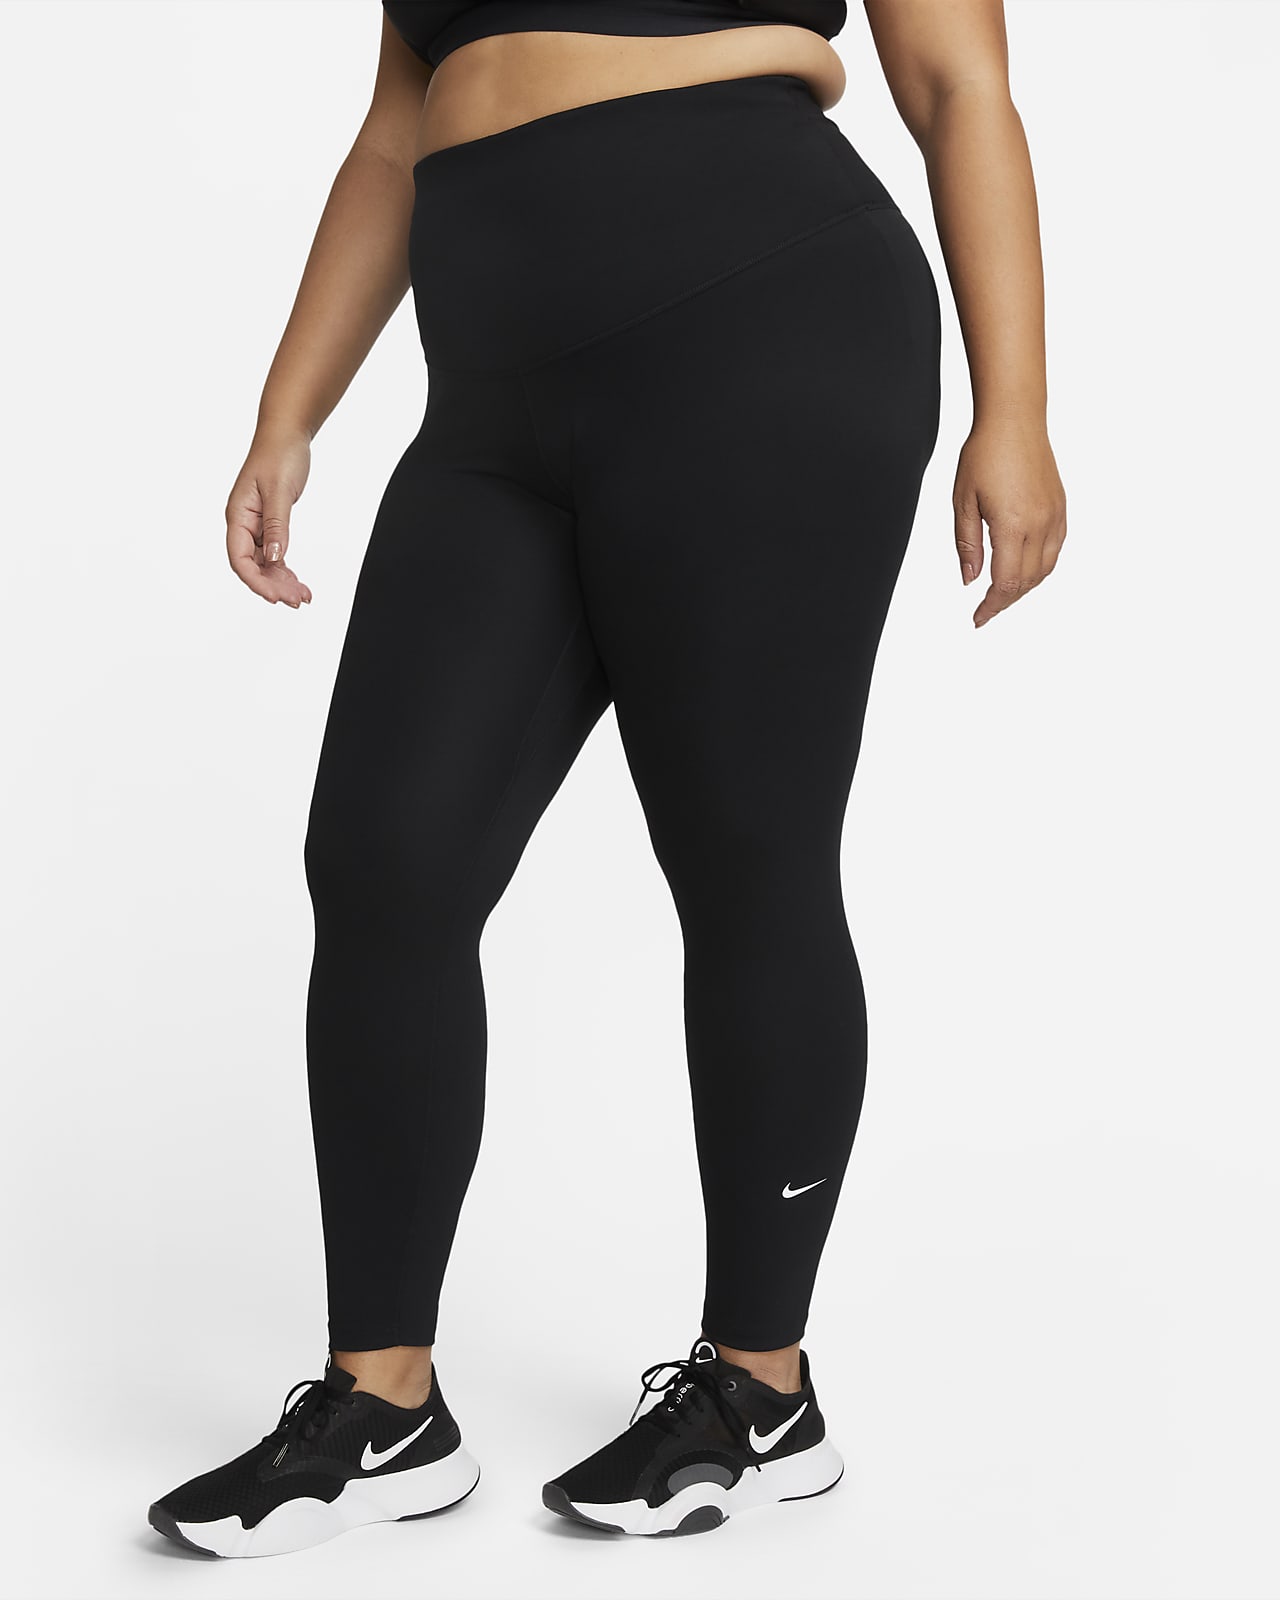 Nike One Leggings de talle alto (Talla grande) - Mujer